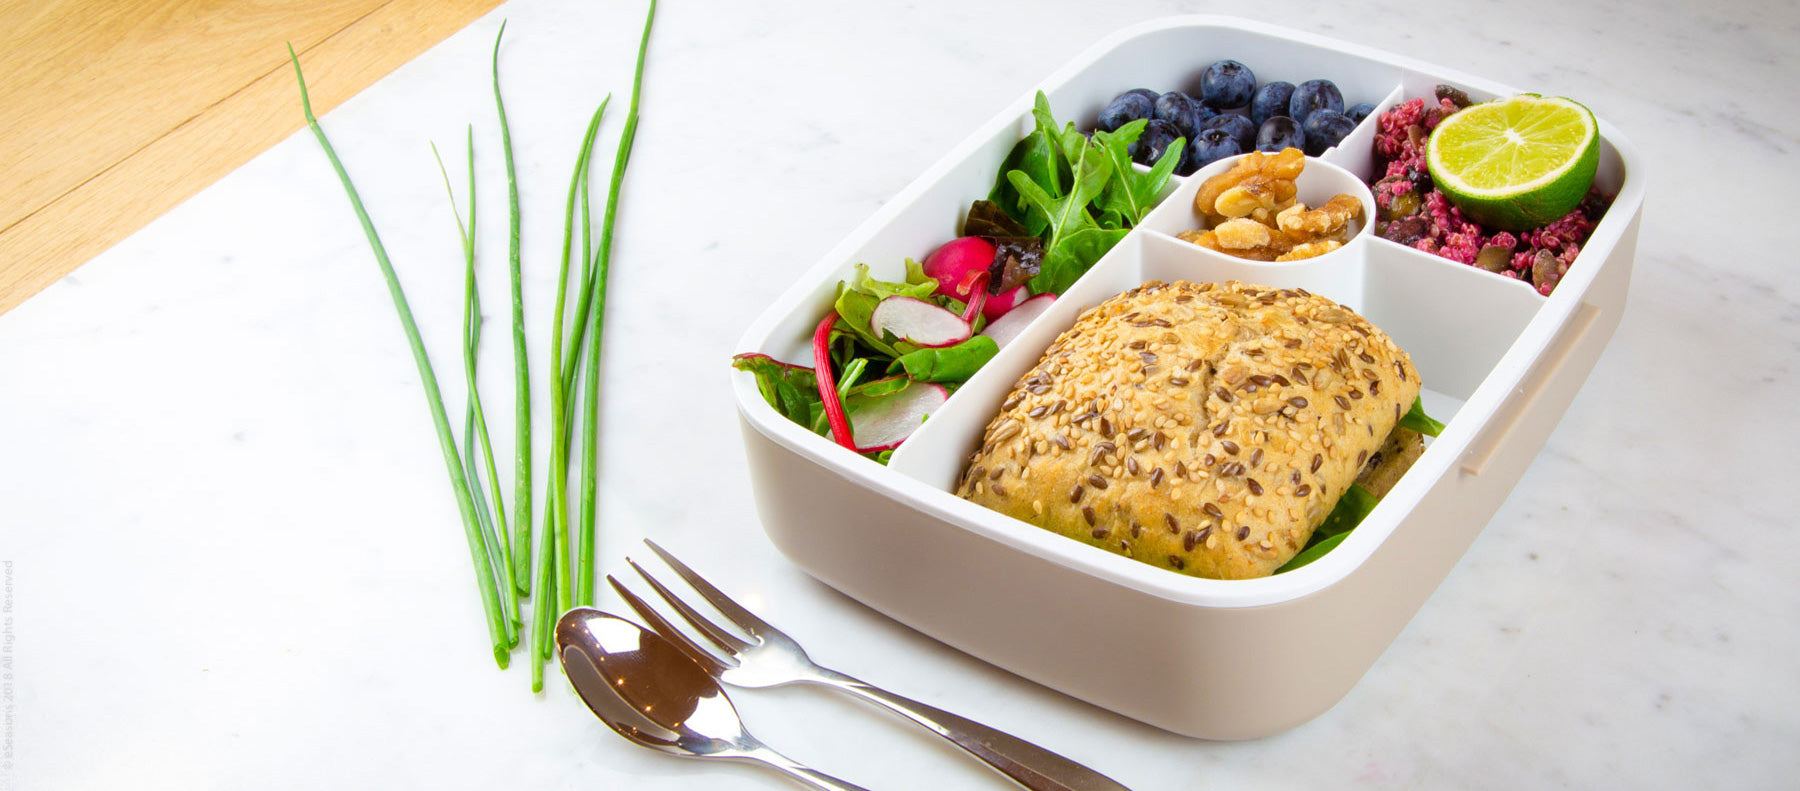 Traumhaftes Lebensmittelfoto: eSeasons Bento Vesperbox 5 Fächer warmes Grau appetitliches Essen aus Salat Blaubeeren und Brot